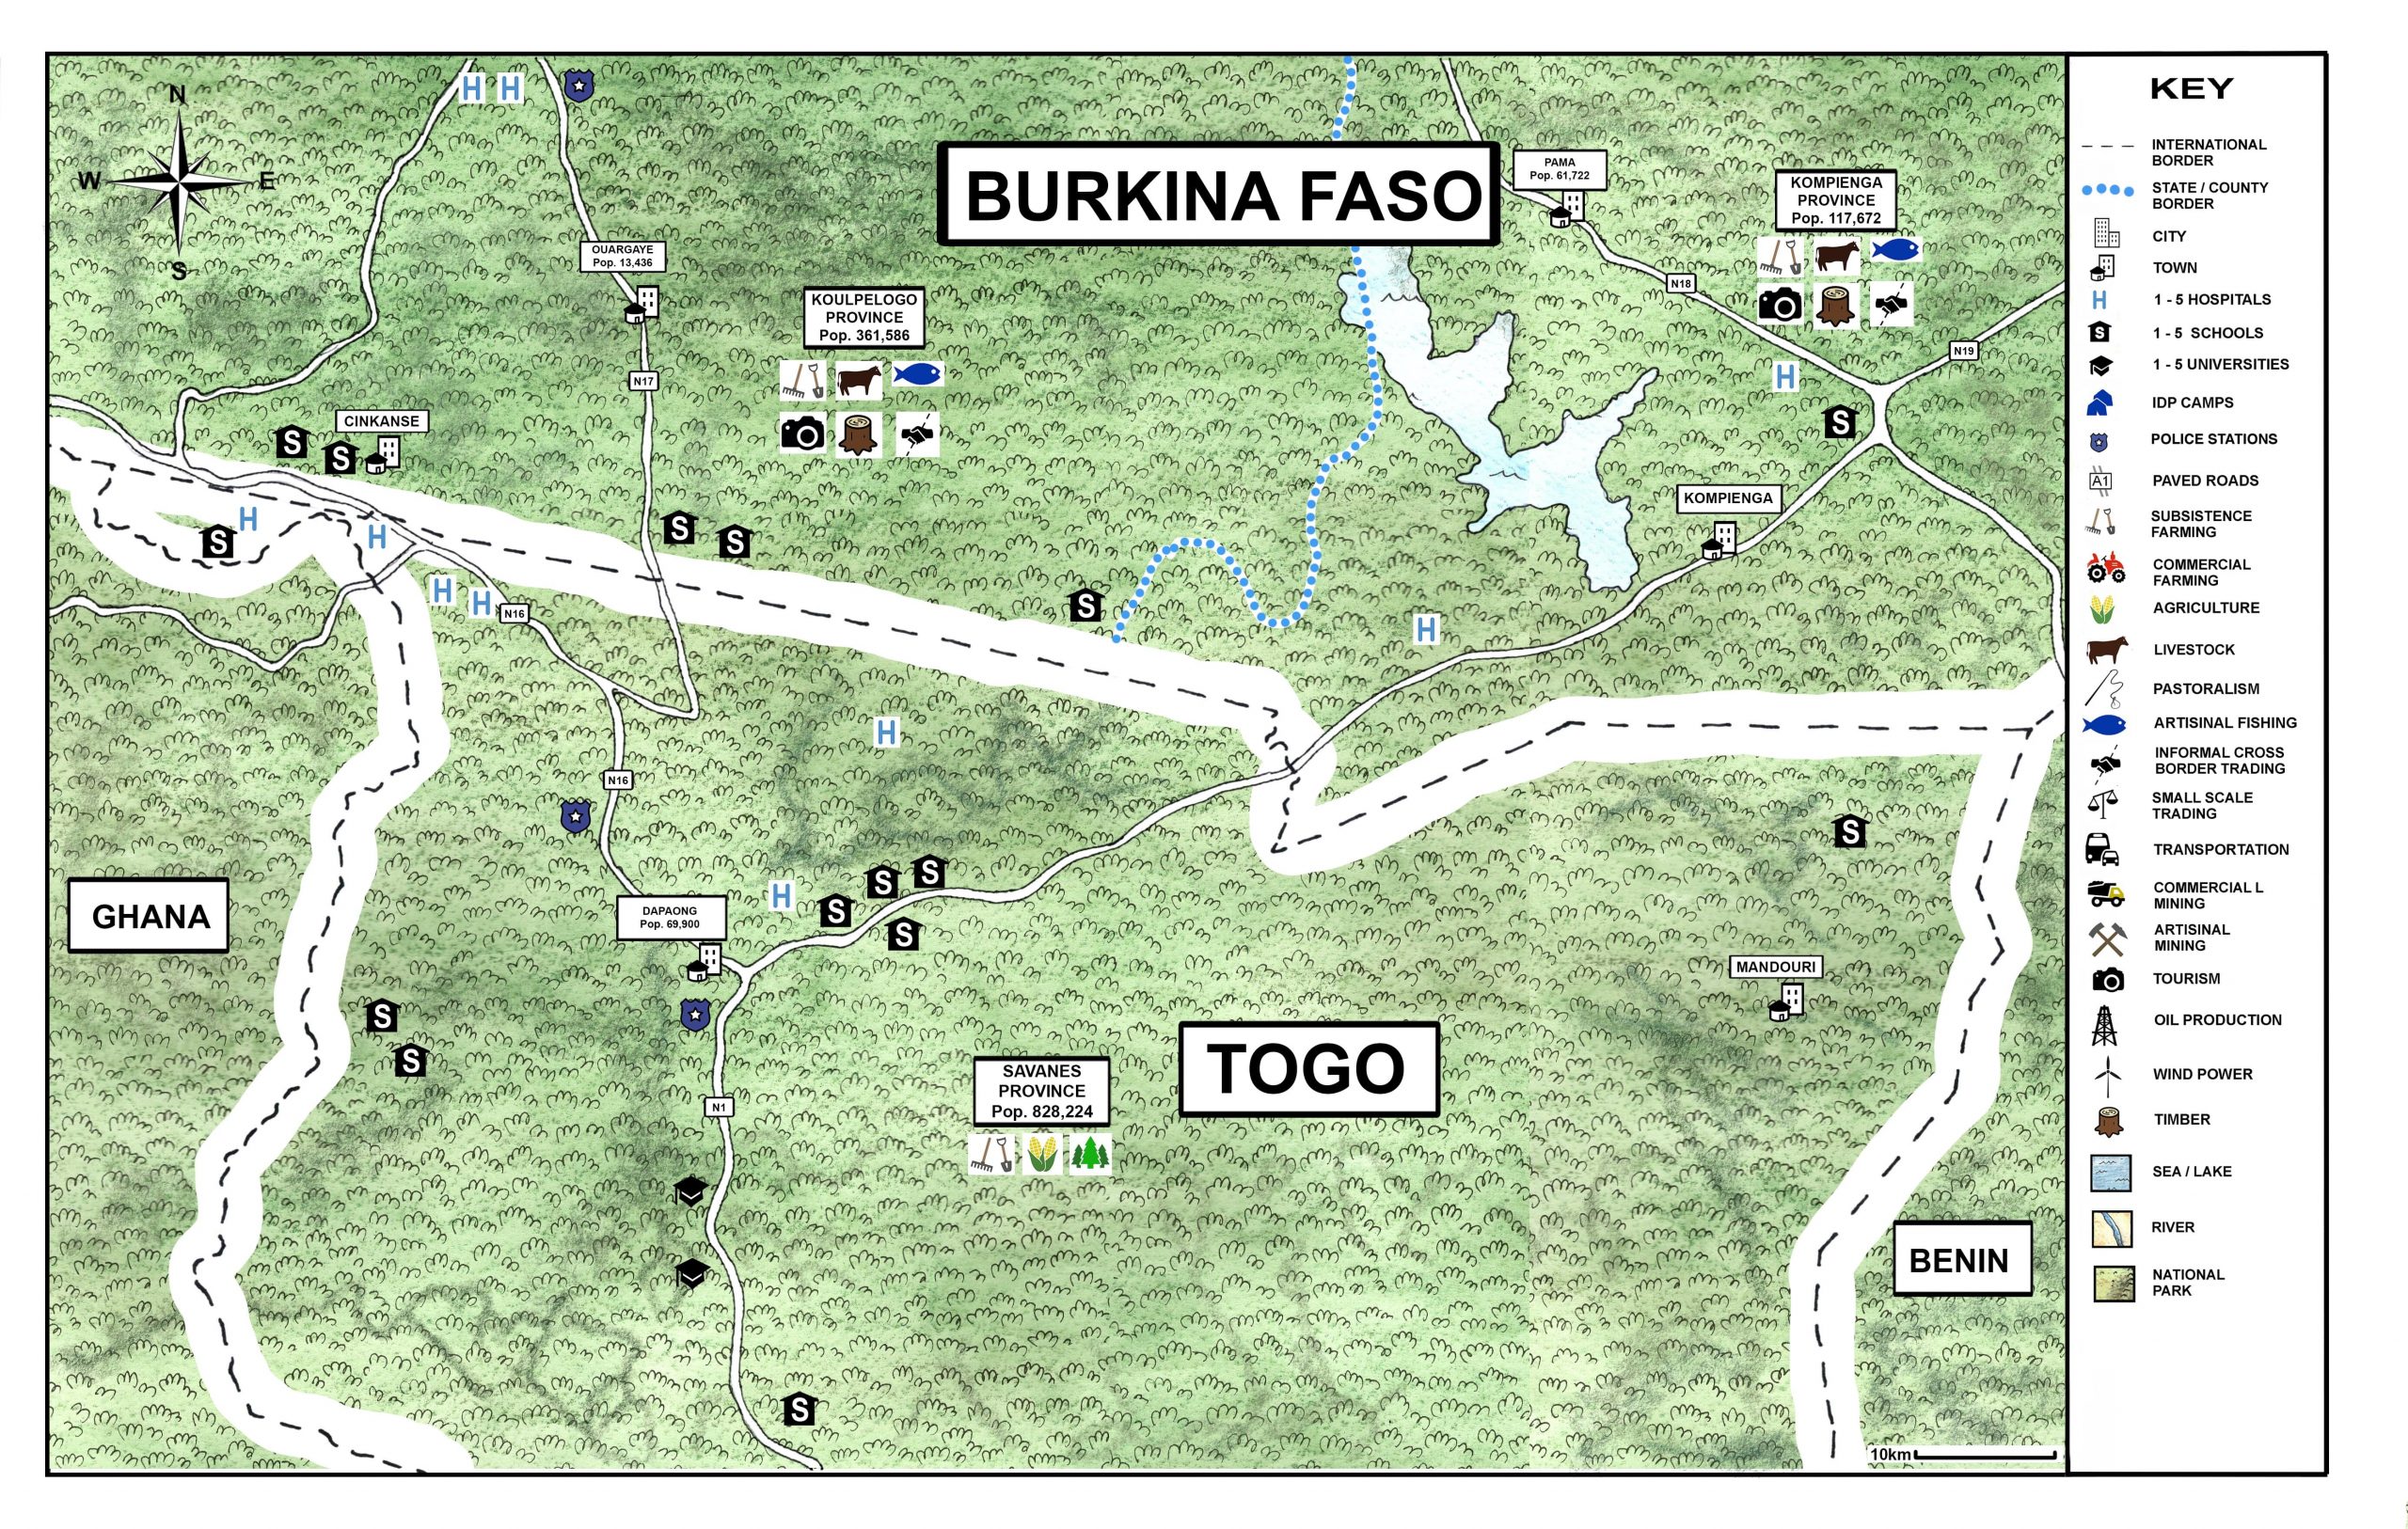 BURKINA FASO - TOGO_illustration